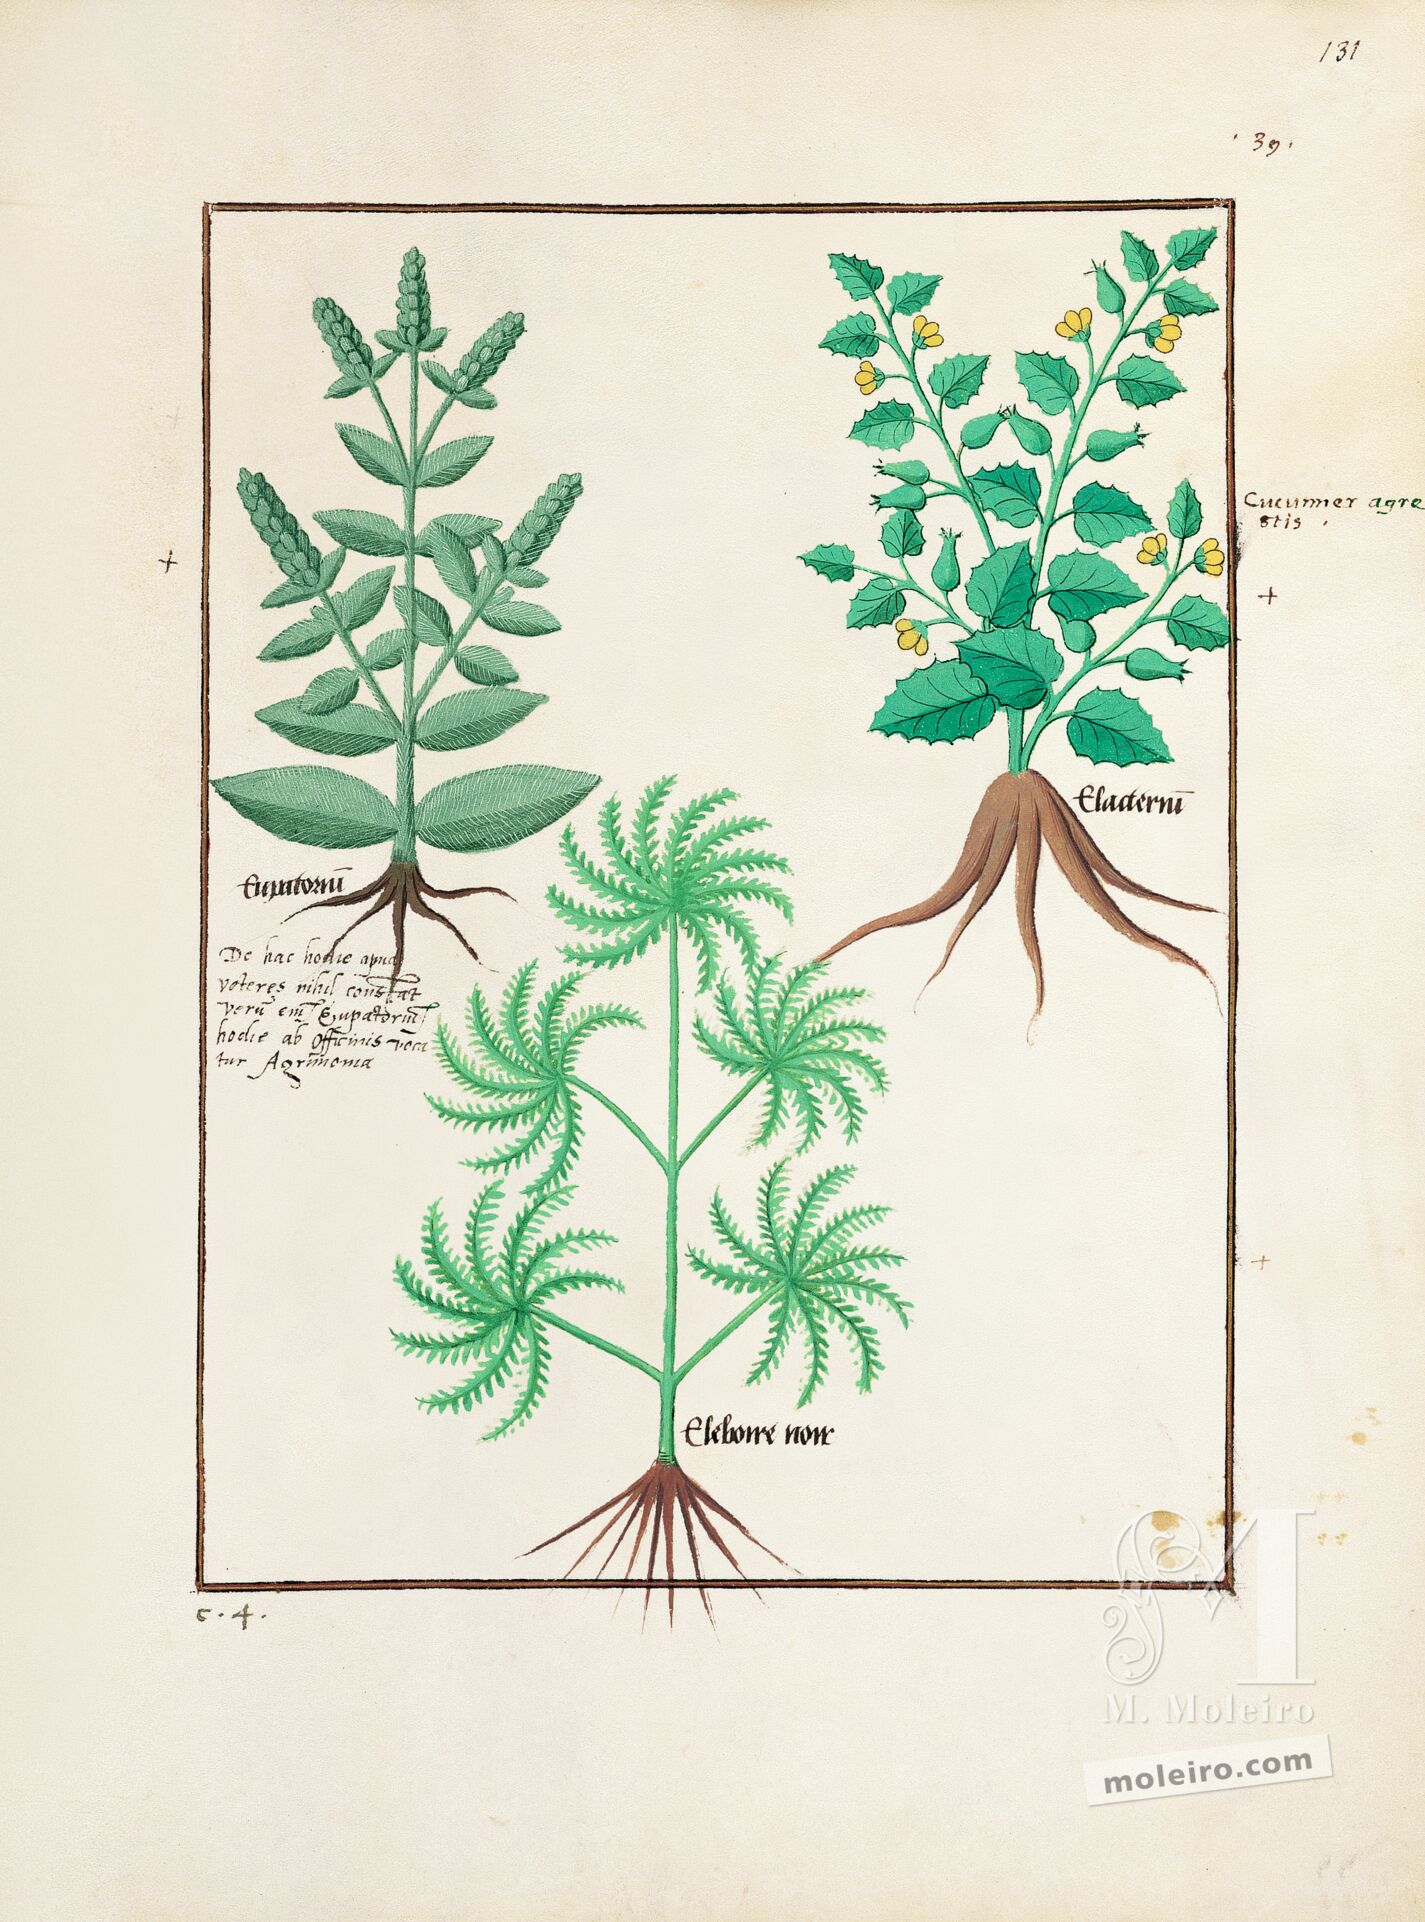 Folio 131r, Eupatoria, Cohombrillo amargo, Eléboro negro